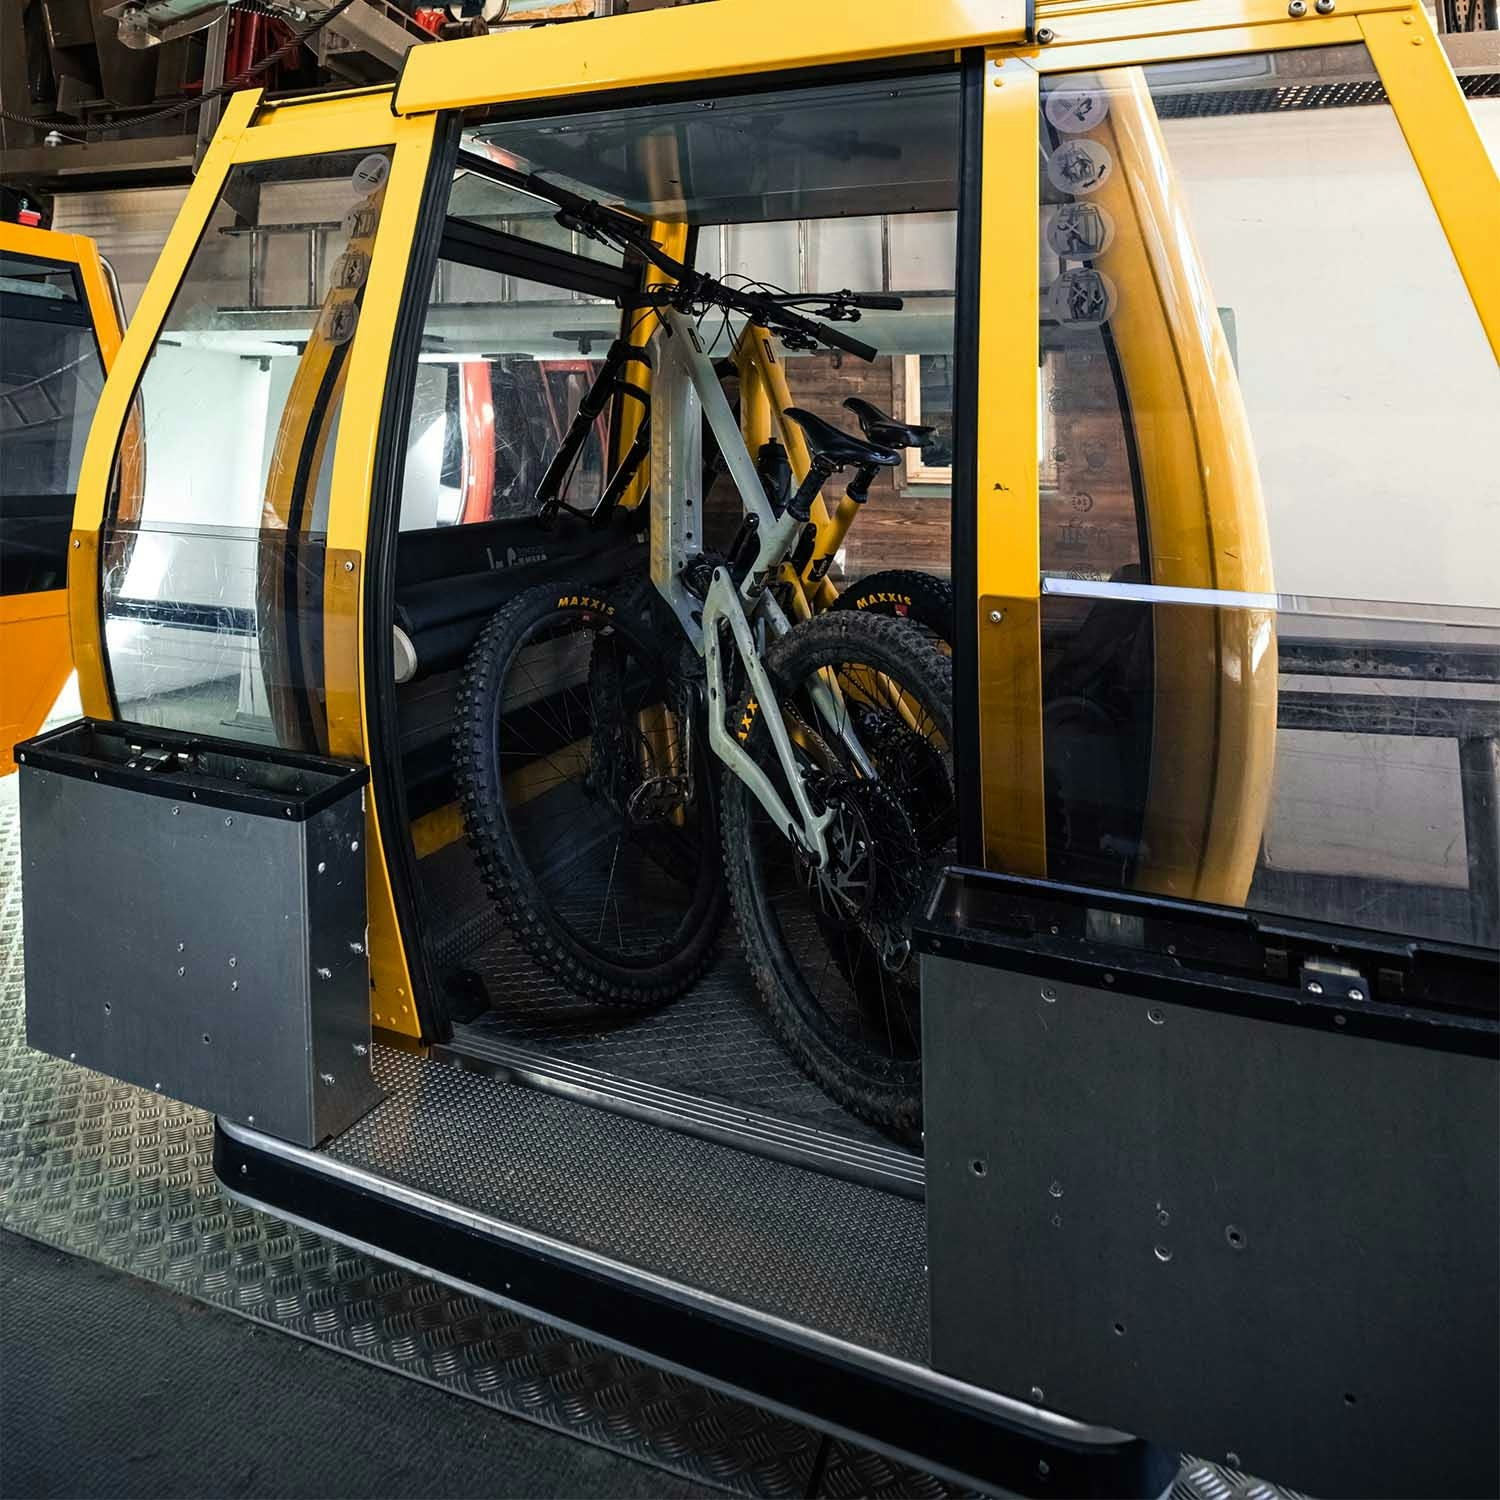 A yellow gondola cab with 2 Santa Cruz Mountain bikes